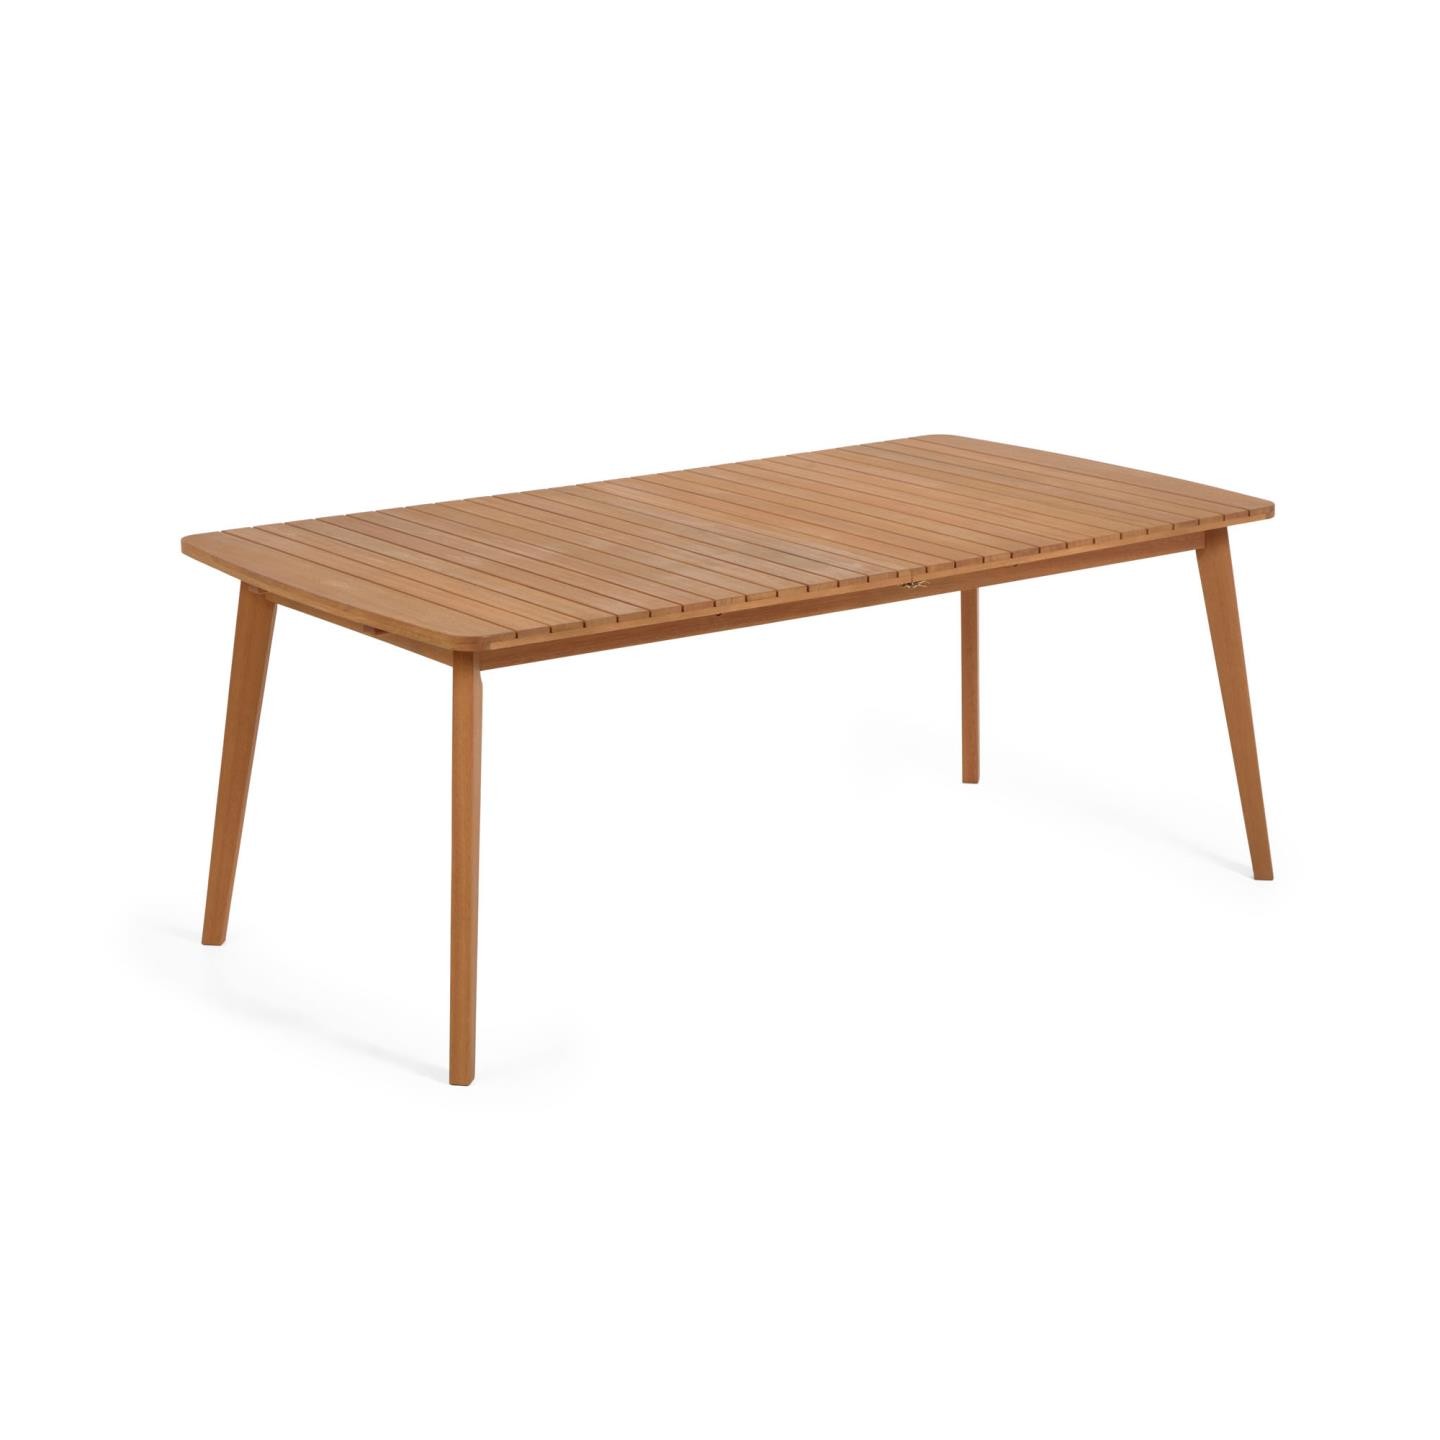 Stół drewniany Hanzel, rozkładany 183(240)x100